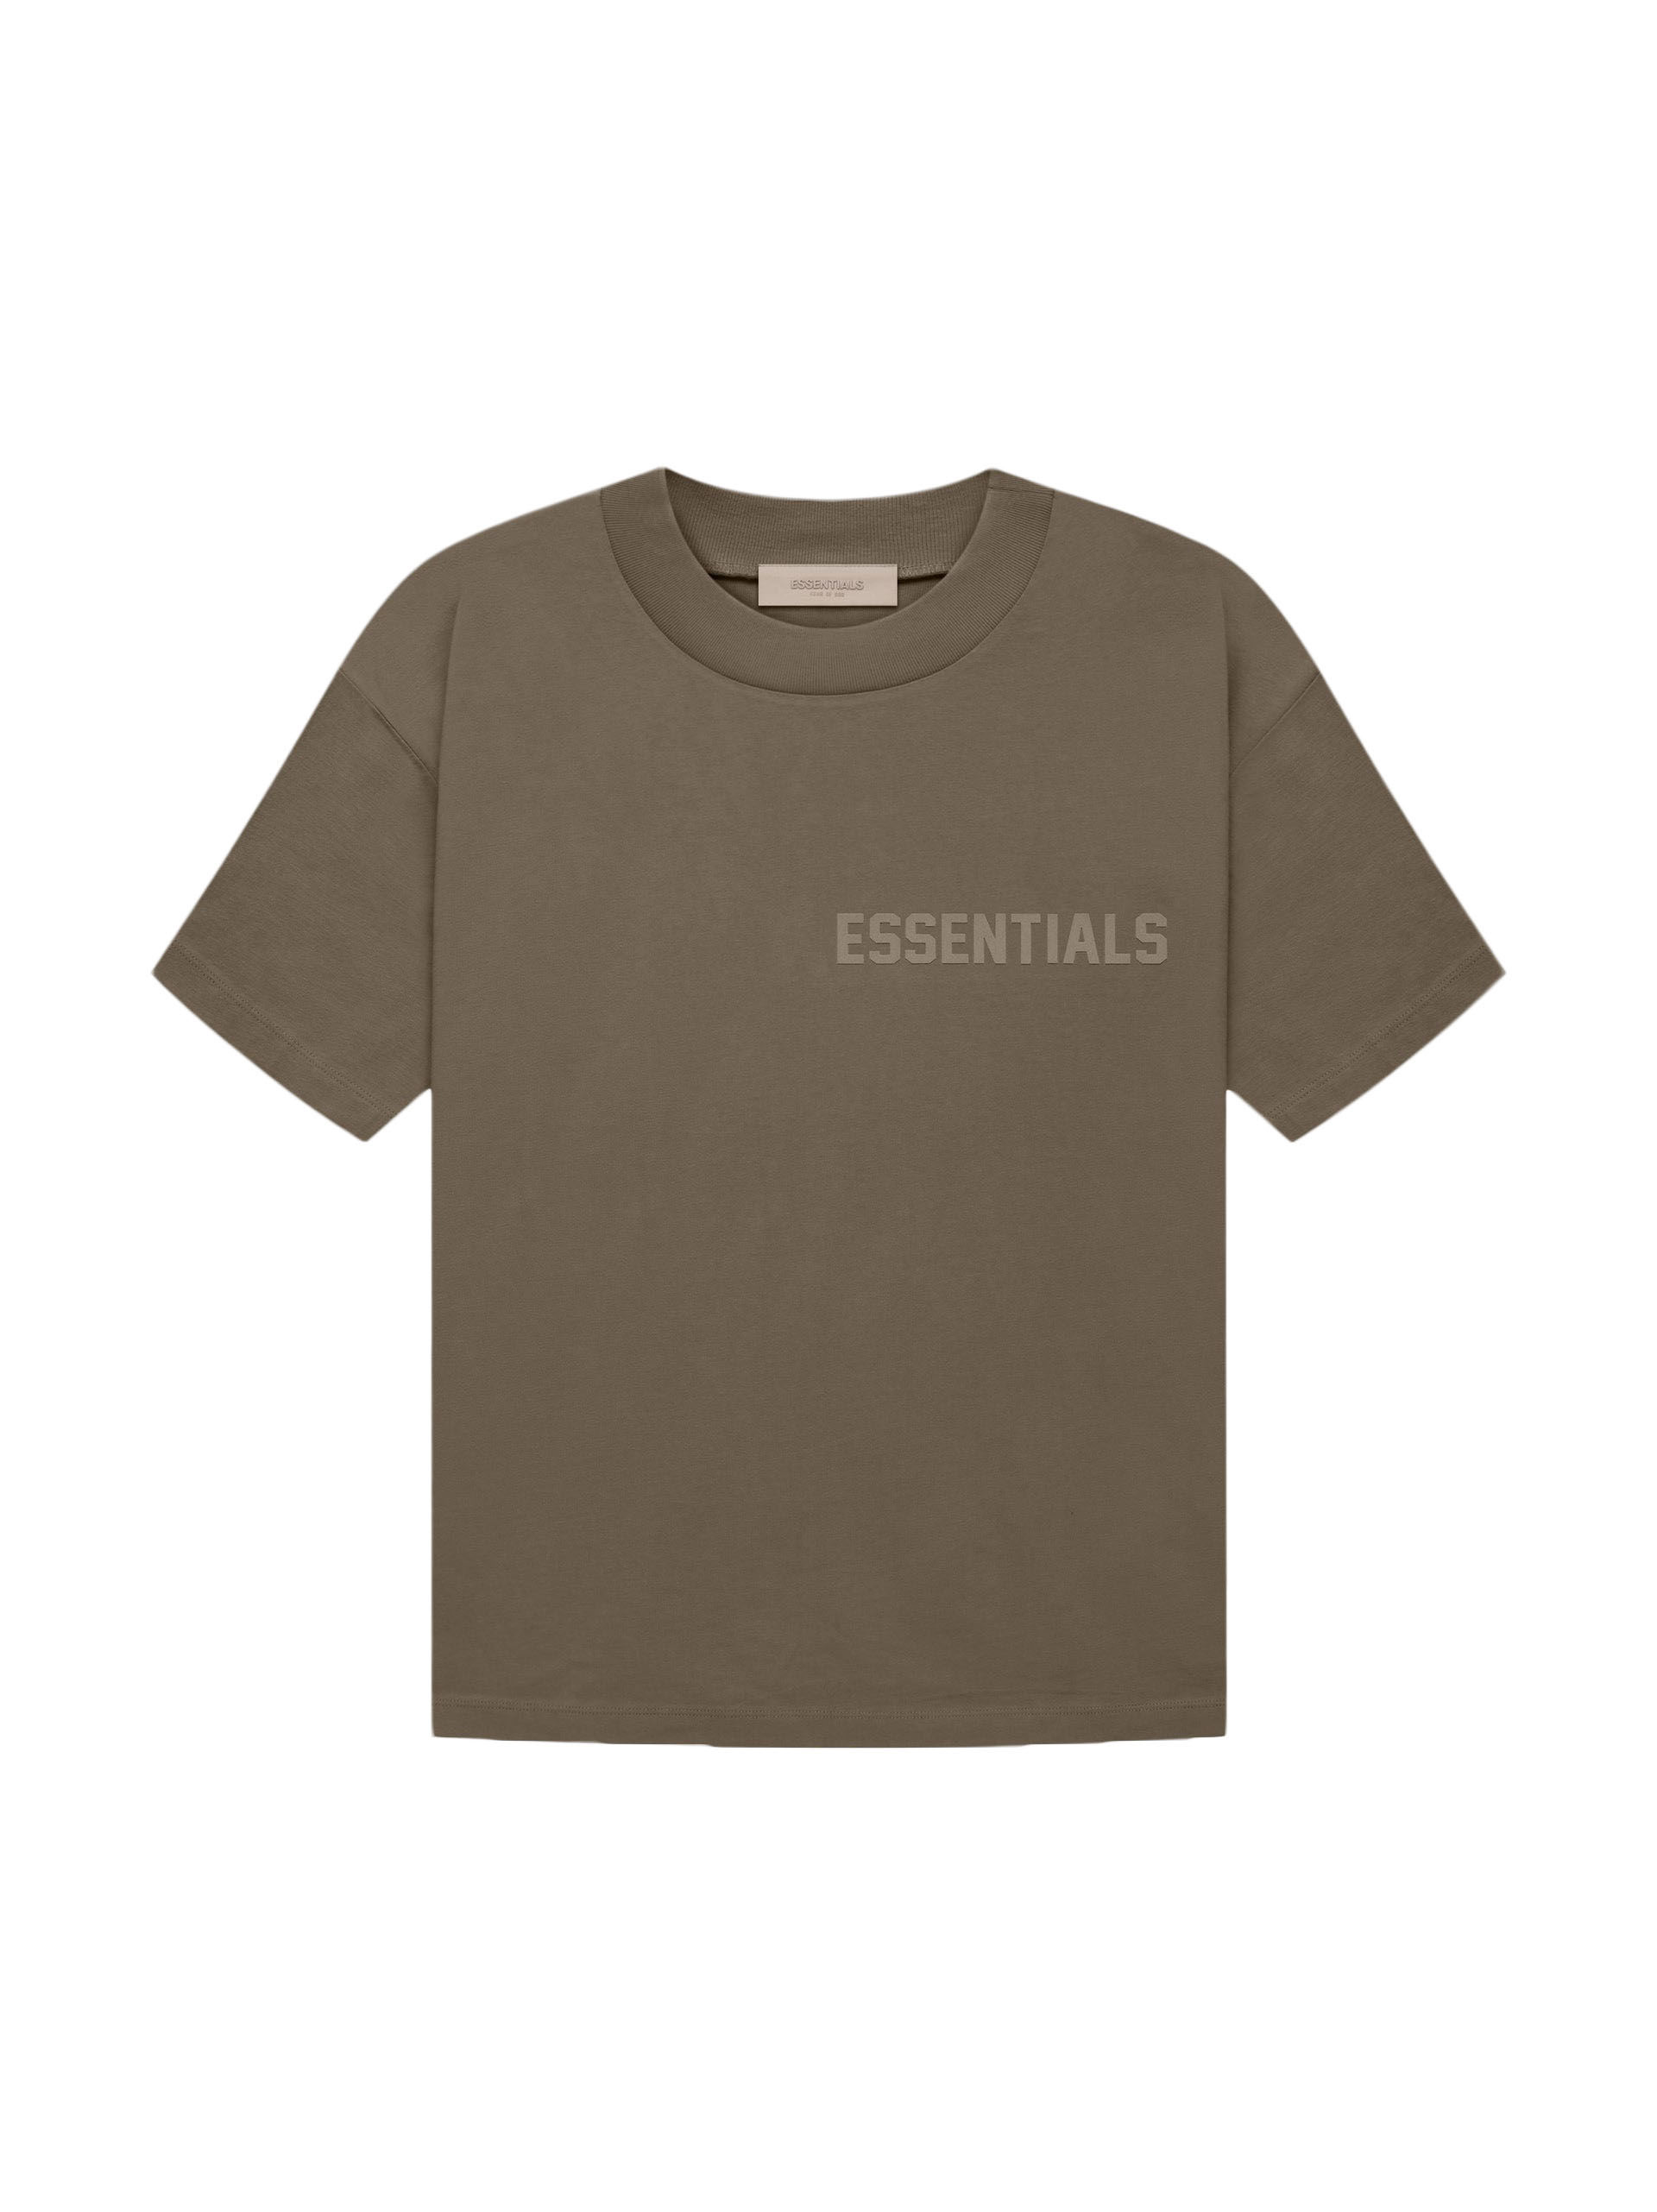 Fear of God Essentials T-shirt Off Black - FW22 Men's - US